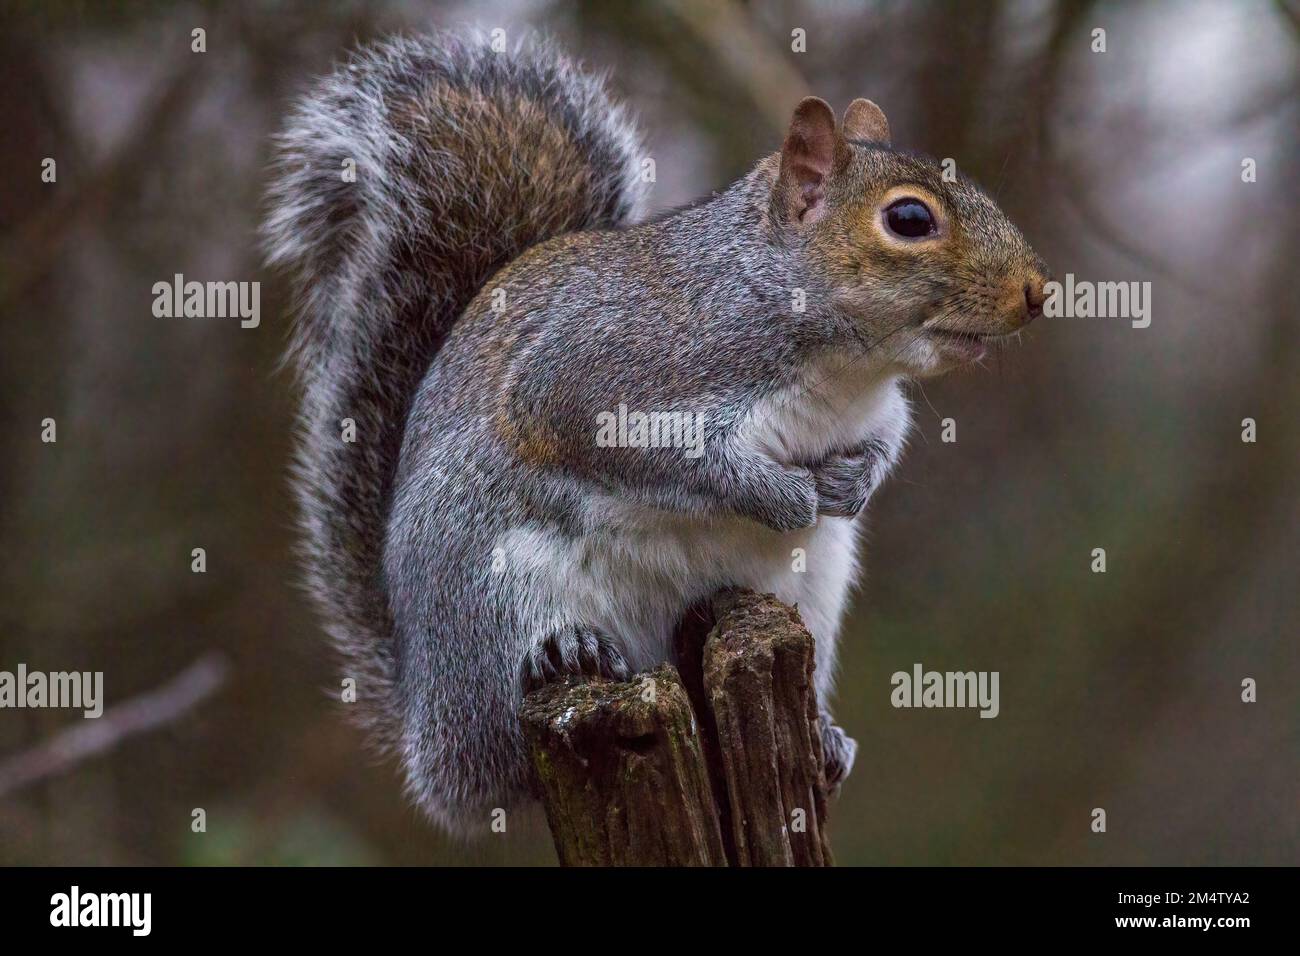 Écureuil gris sciurus carolinensis perchée sur une souche d'arbre, plumage gris et brun rougeâtre avec un dessous blanc une grande queue bushy couvre le dos Banque D'Images